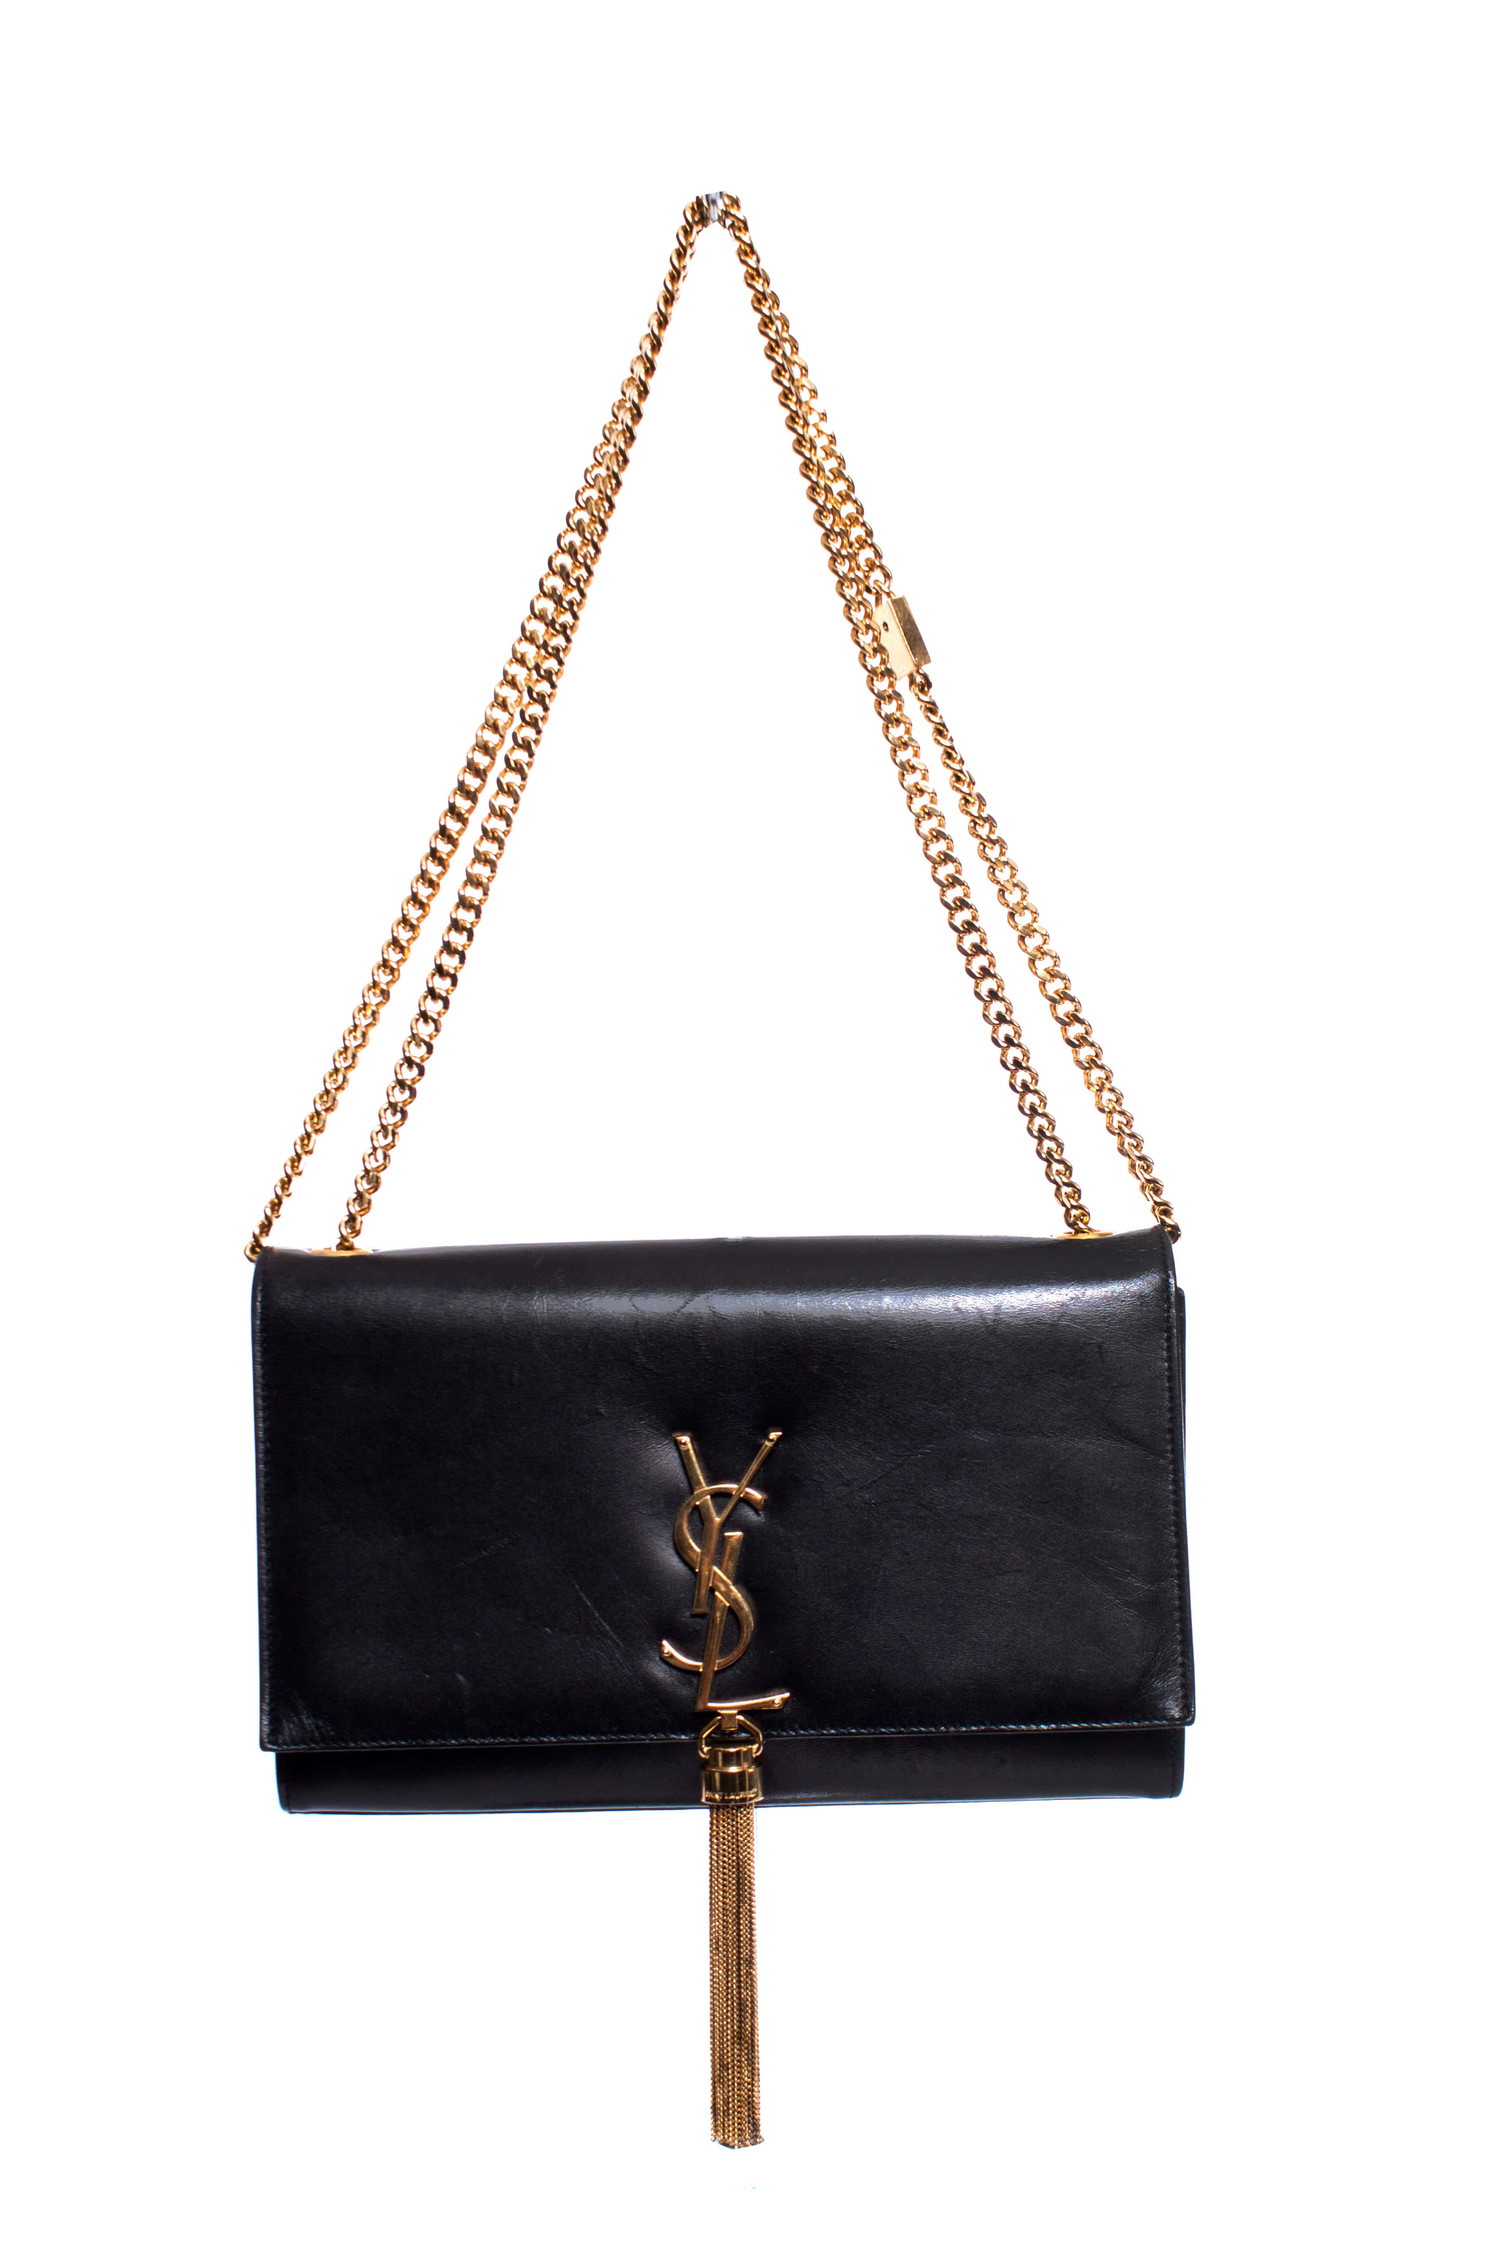 Yves Saint Laurent YSL Kate Medium Black Tassel Bag in Dust Bag at 1stDibs